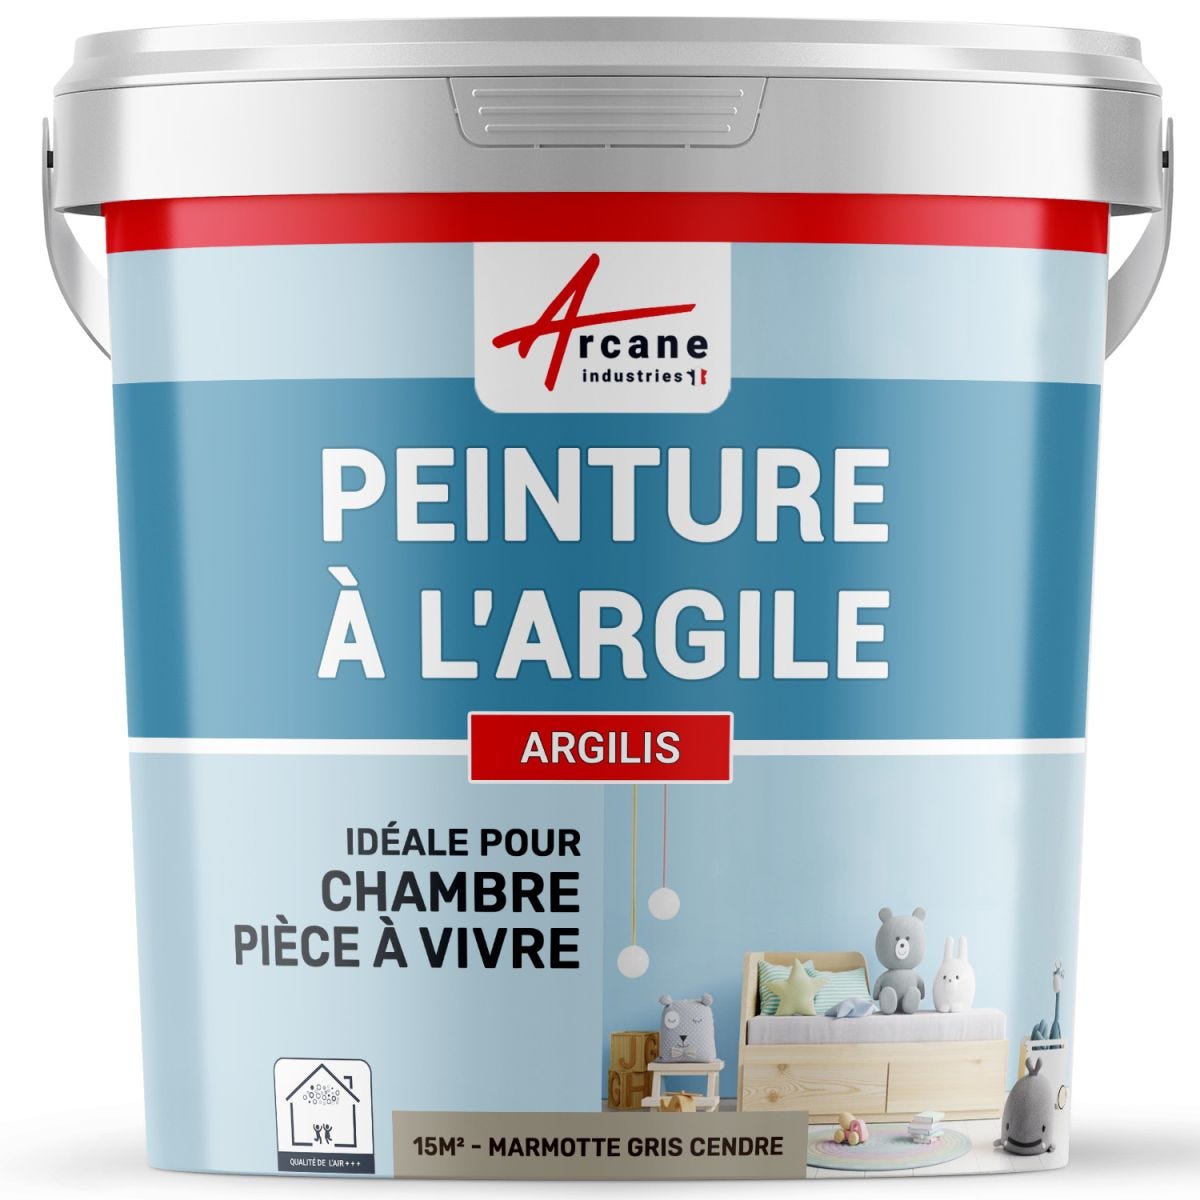 PEINTURE ARGILE naturelle et saine - ARGILIS Marmotte Gris Cendre - 15 m² (2.5 kg en 1 couche)ARCANE INDUSTRIES 0